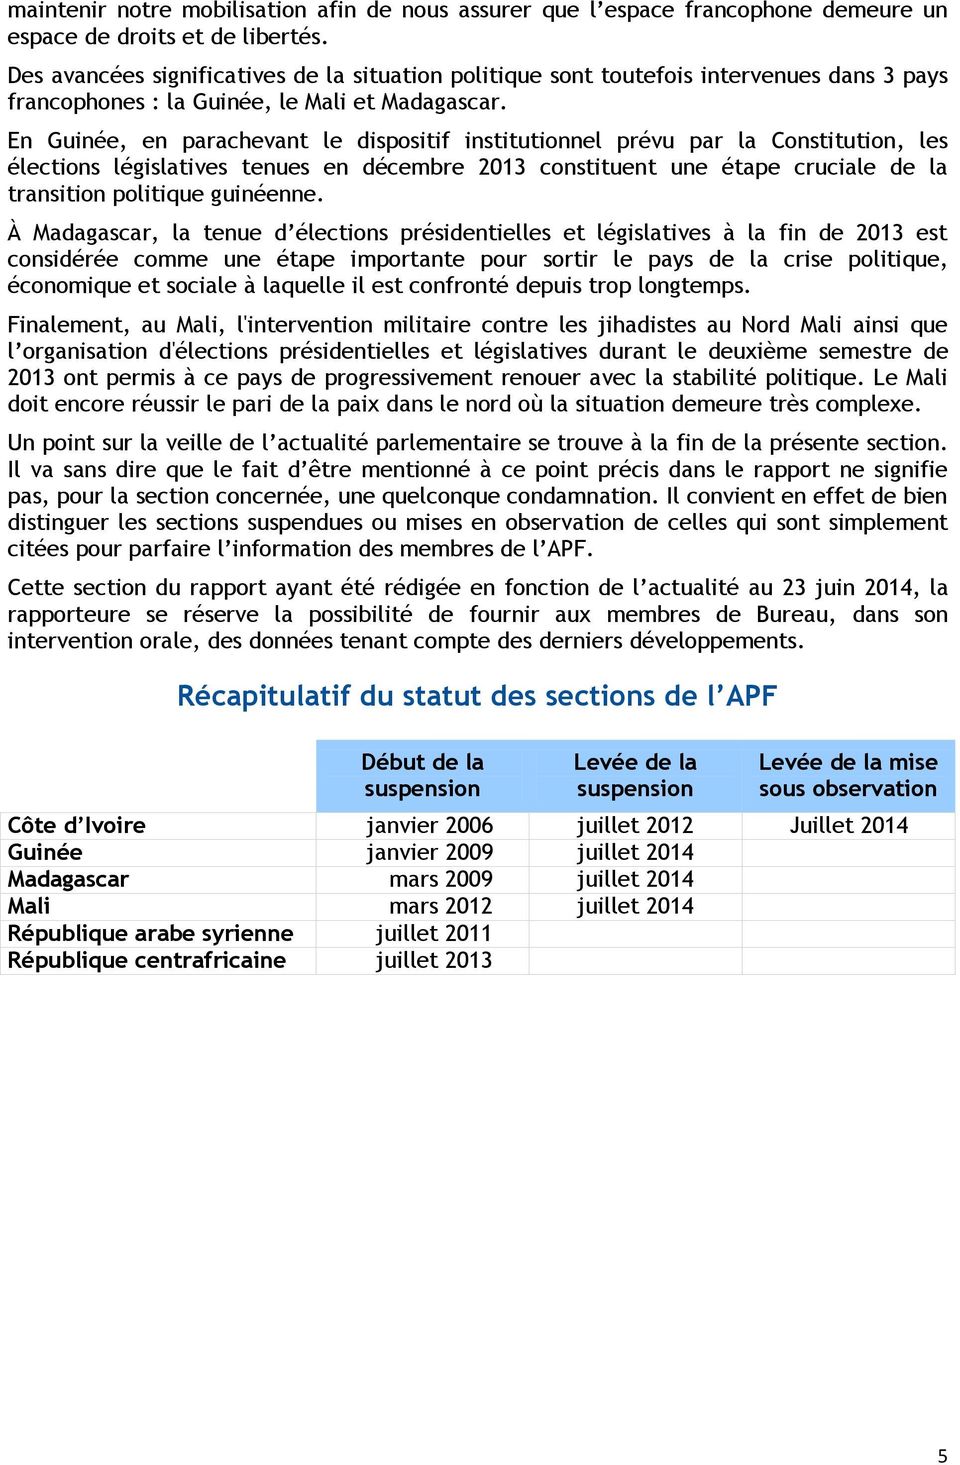 En Guinée, en parachevant le dispositif institutionnel prévu par la Constitution, les élections législatives tenues en décembre 2013 constituent une étape cruciale de la transition politique